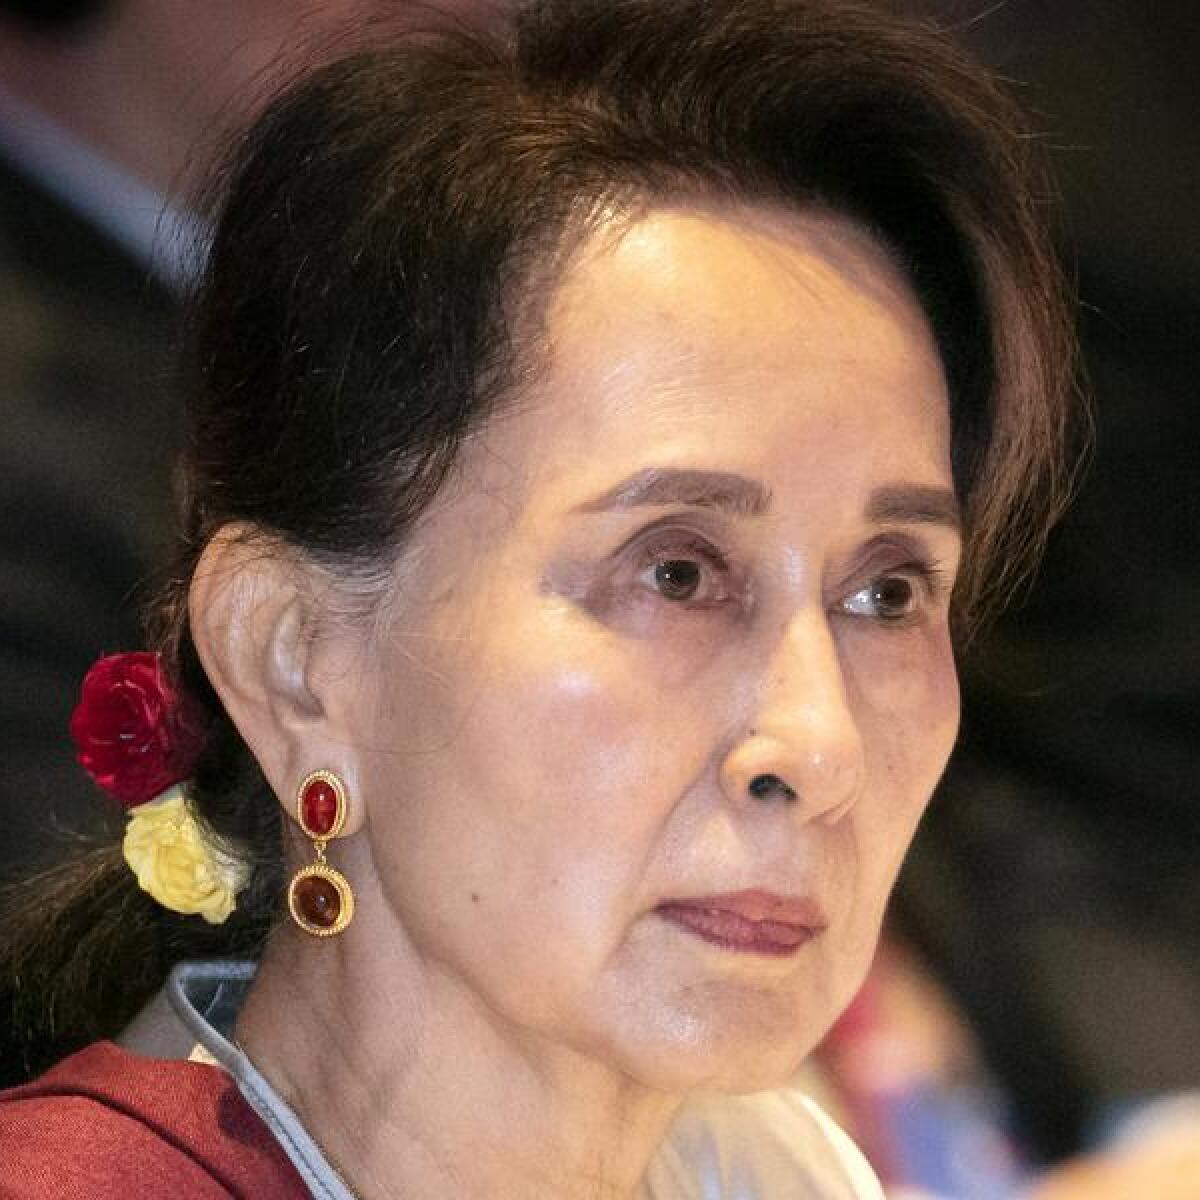 Myanmar's deposed leader Aung San Suu Kyi